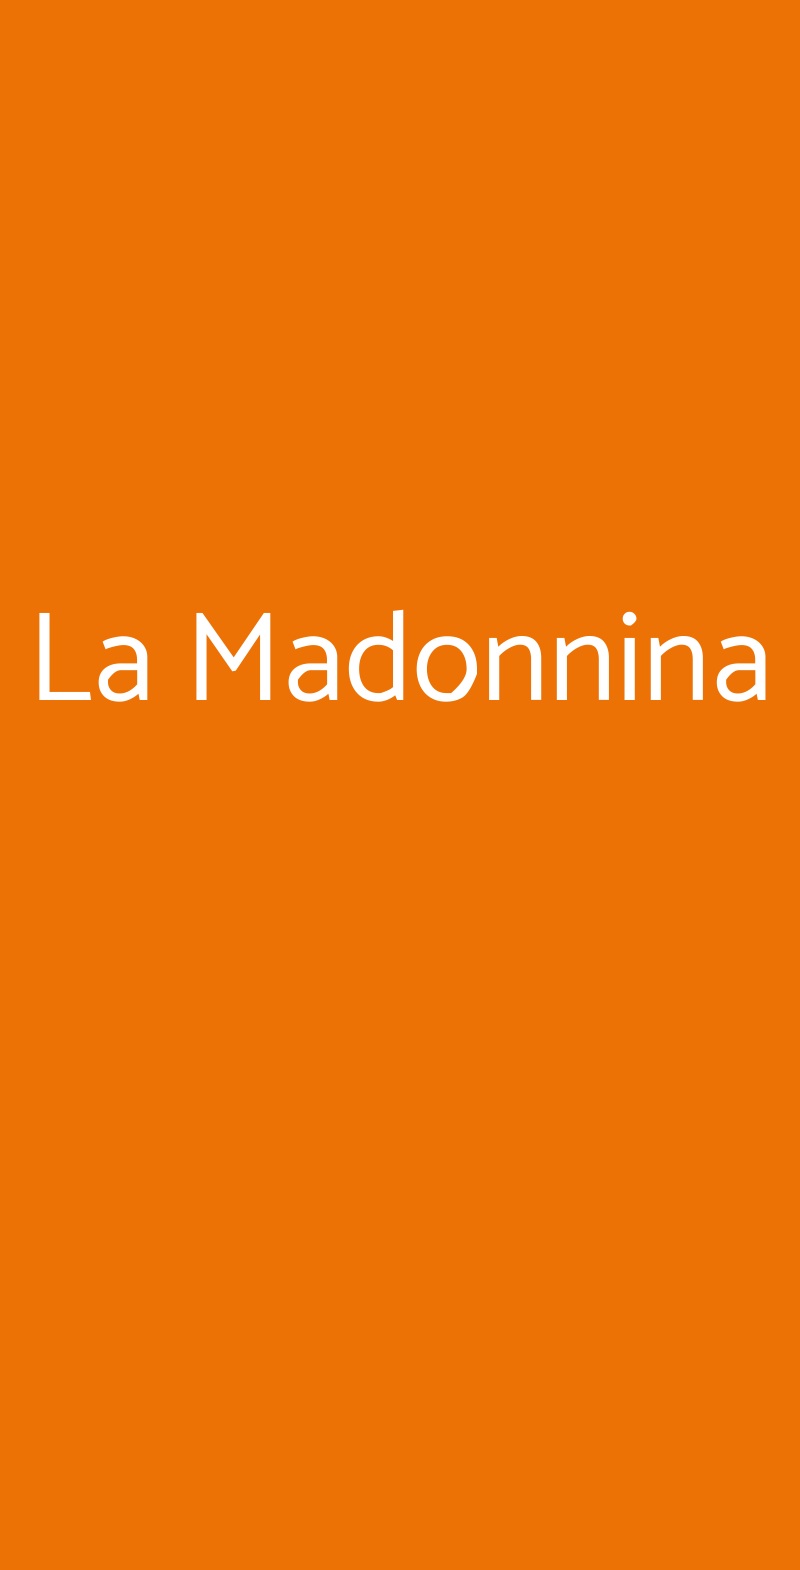 La Madonnina Lamezia Terme menù 1 pagina